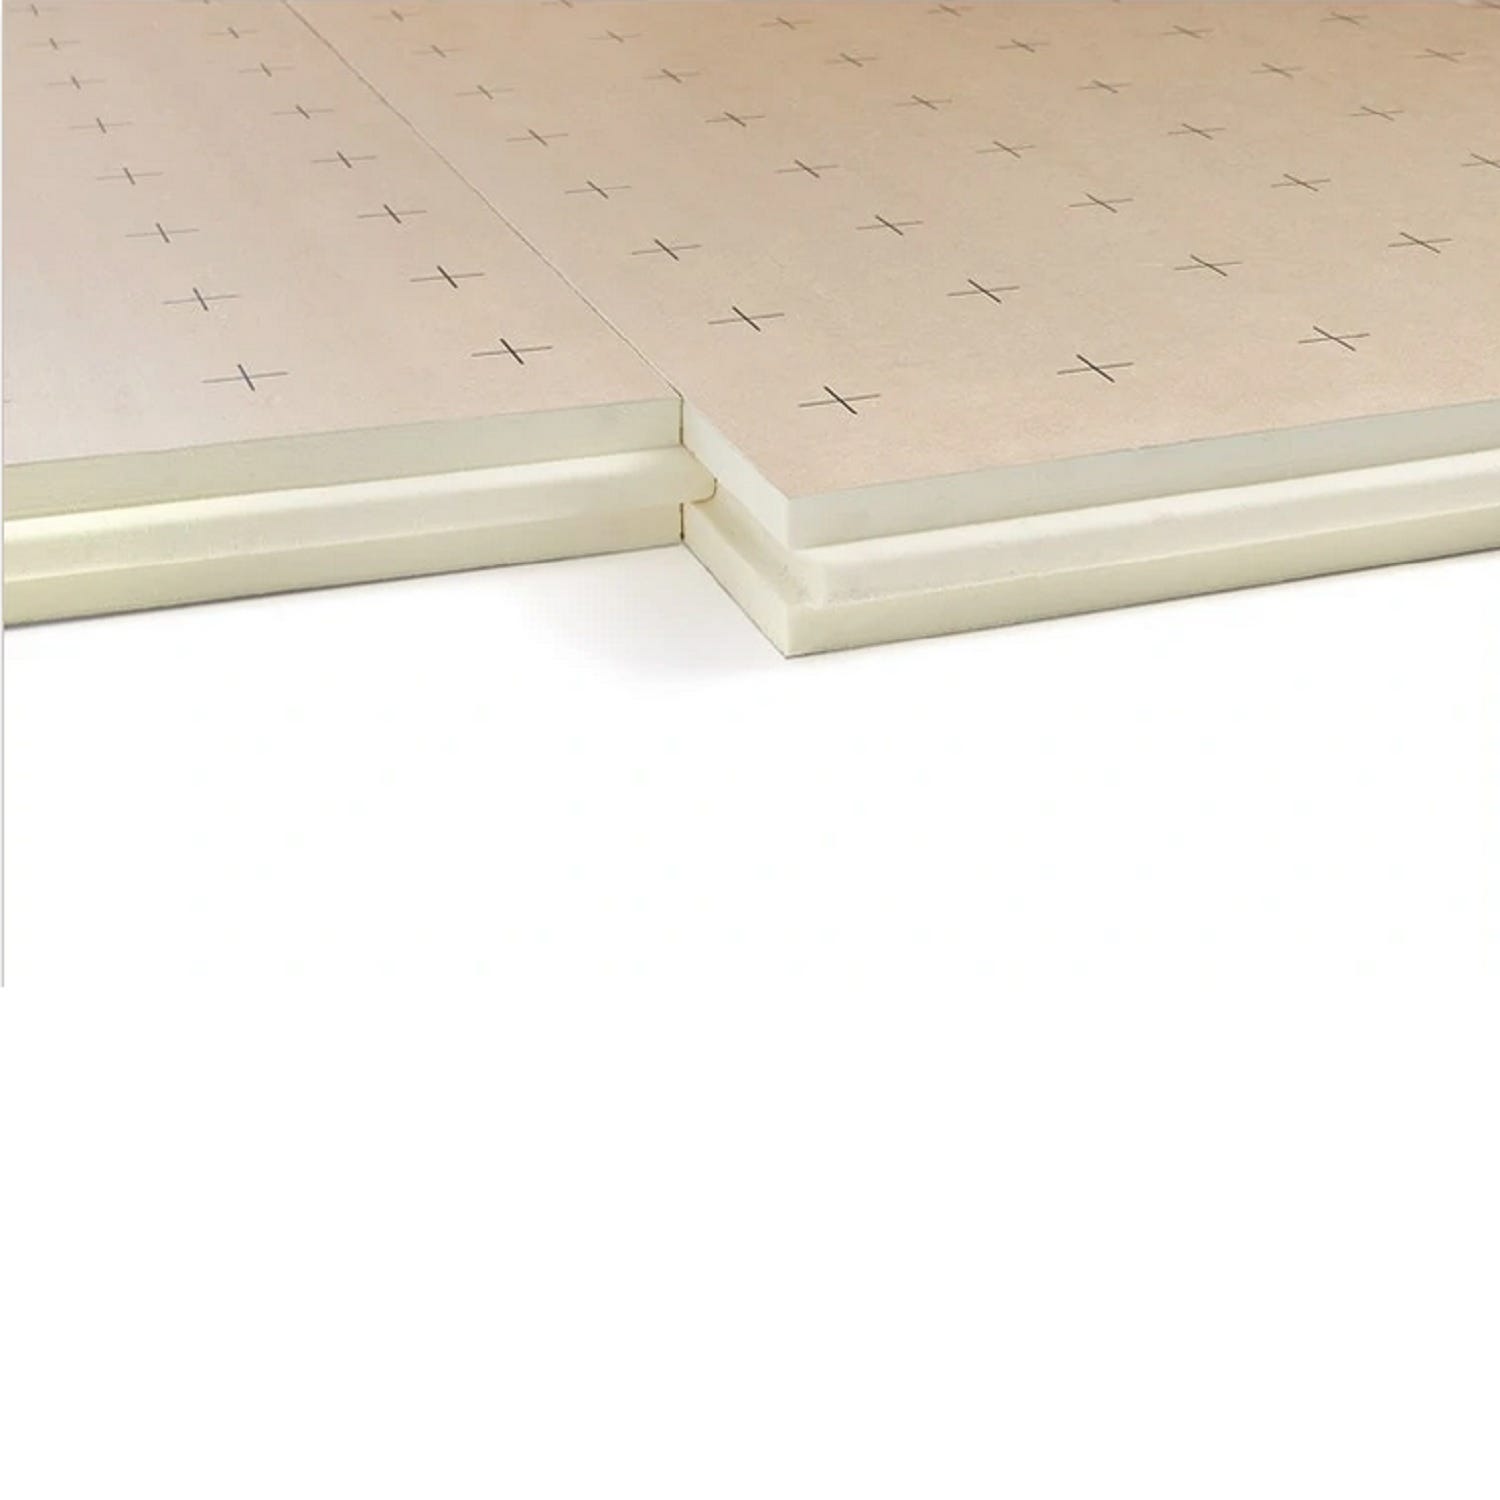 Dalle plancher chauffant épaisseur 120 millimètres R5.45 - paquet de 4 dalles - 4.8 m2 2